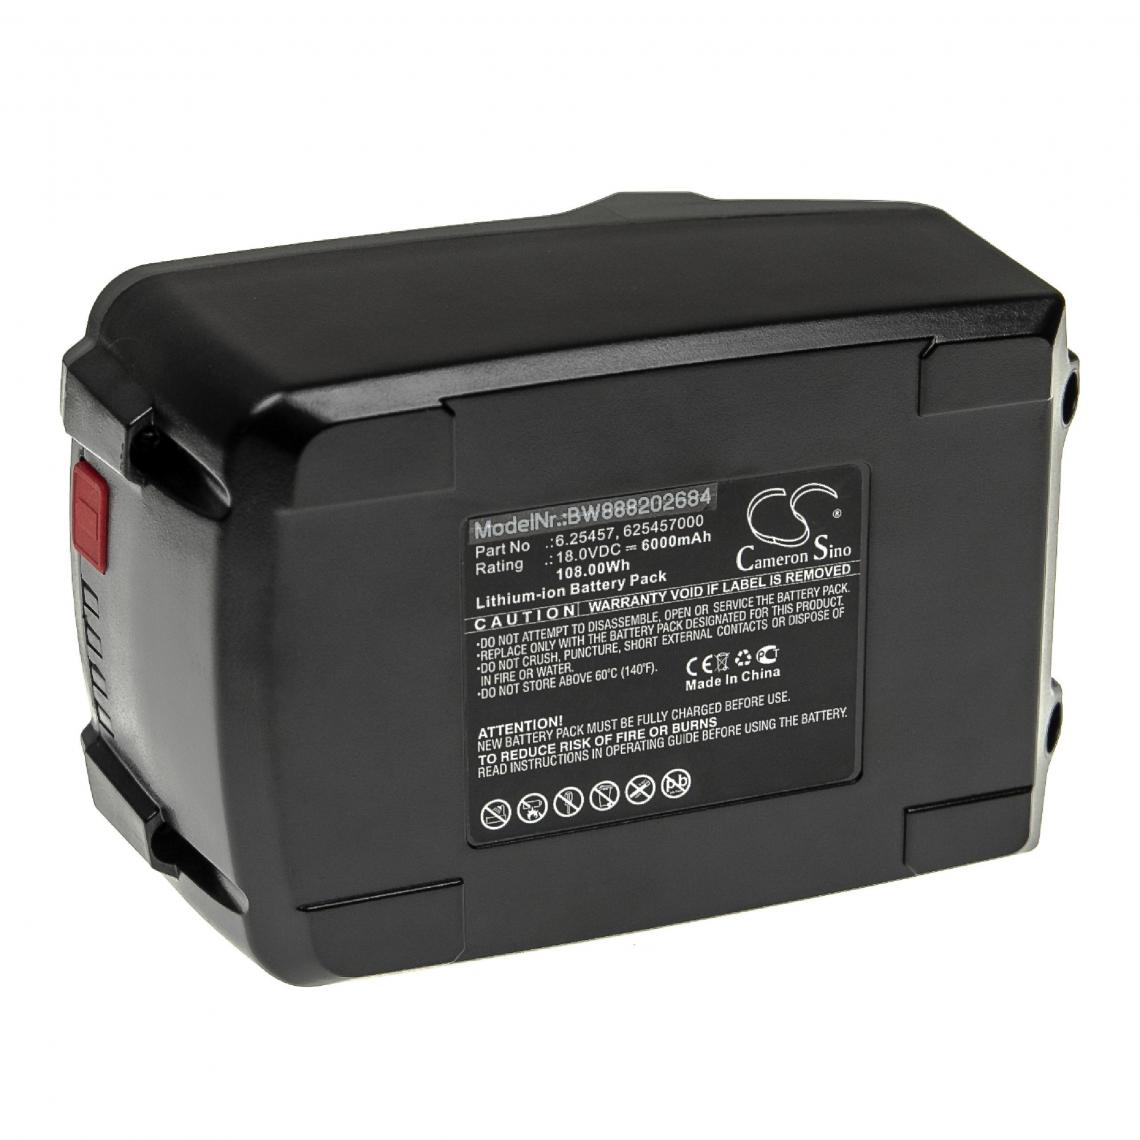 Vhbw - vhbw Batterie remplacement pour Metabo 625342000, 625343000, 625457000, 625591000, 625592000 pour outil électrique (6000mAh Li-ion 18 V) - Autre appareil de mesure